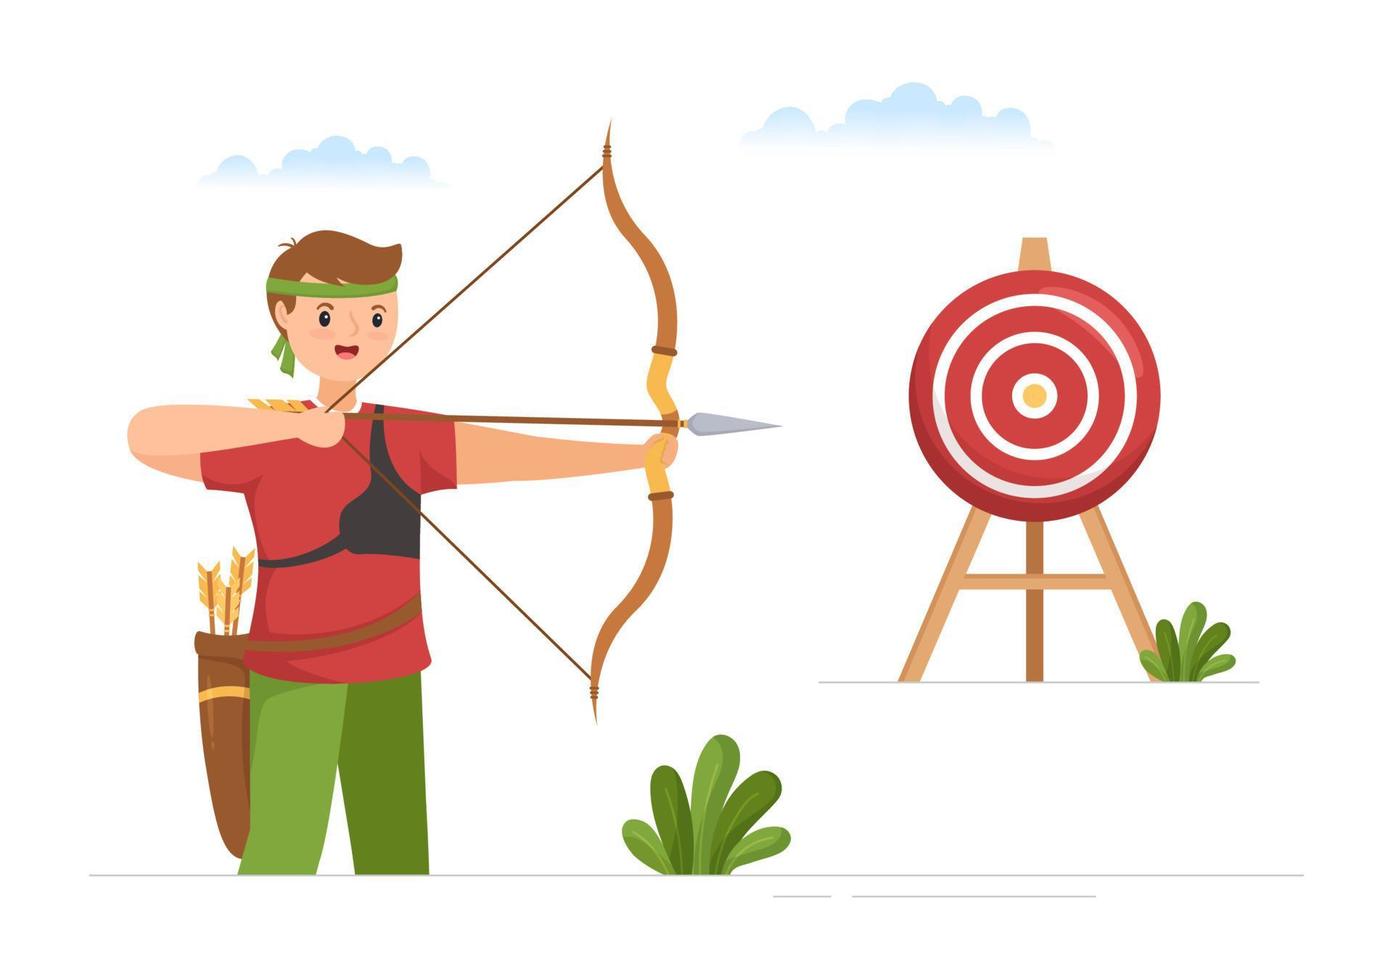 deporte de tiro con arco con arco y flecha apuntando al objetivo para actividades recreativas al aire libre en ilustración de plantilla dibujada a mano de dibujos animados planos vector